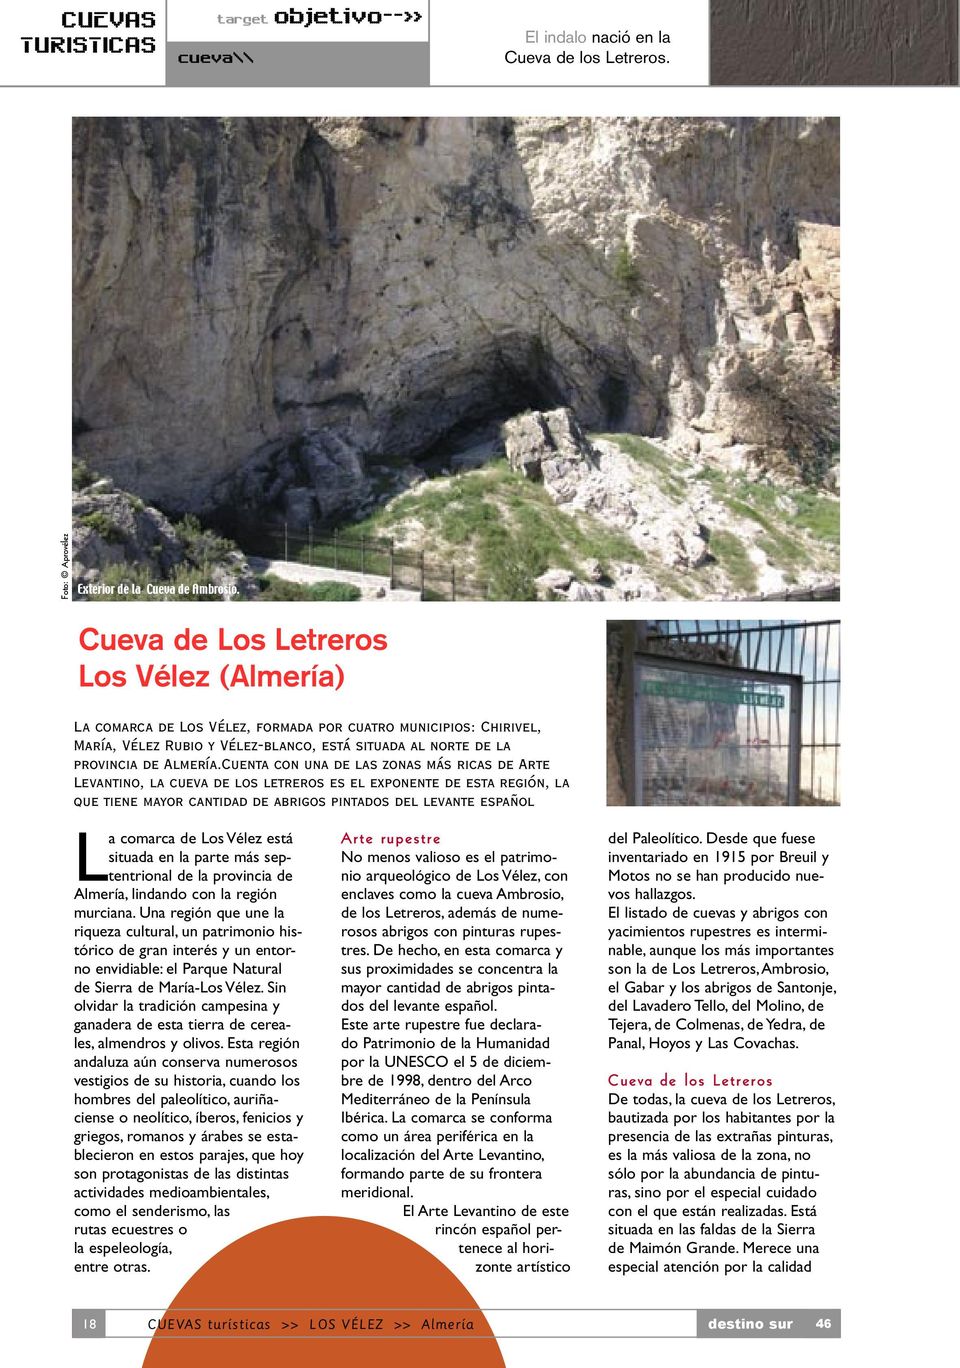 Cuenta con una de las zonas más ricas de Arte Levantino, la cueva de los letreros es el exponente de esta región, la que tiene mayor cantidad de abrigos pintados del levante español La comarca de Los